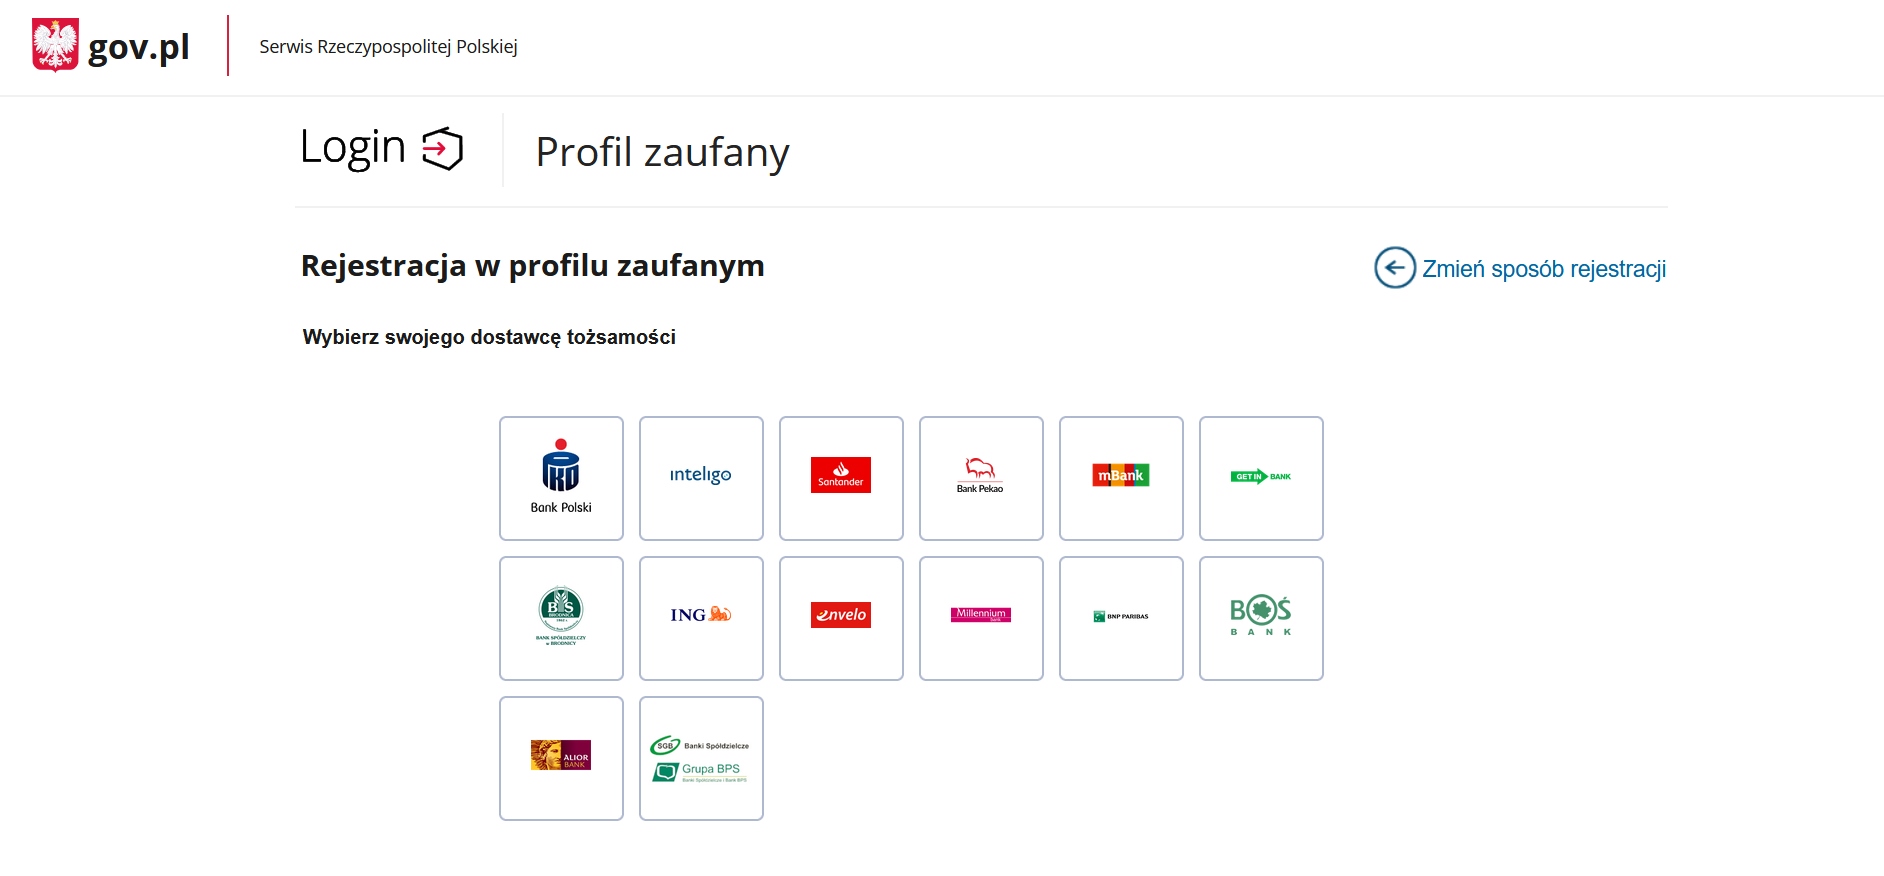 Banki umożliwiające założenie Profilu Zaufanego. Widok ekranu w sekcji "Profil Zaufany" na stronach gov.pl